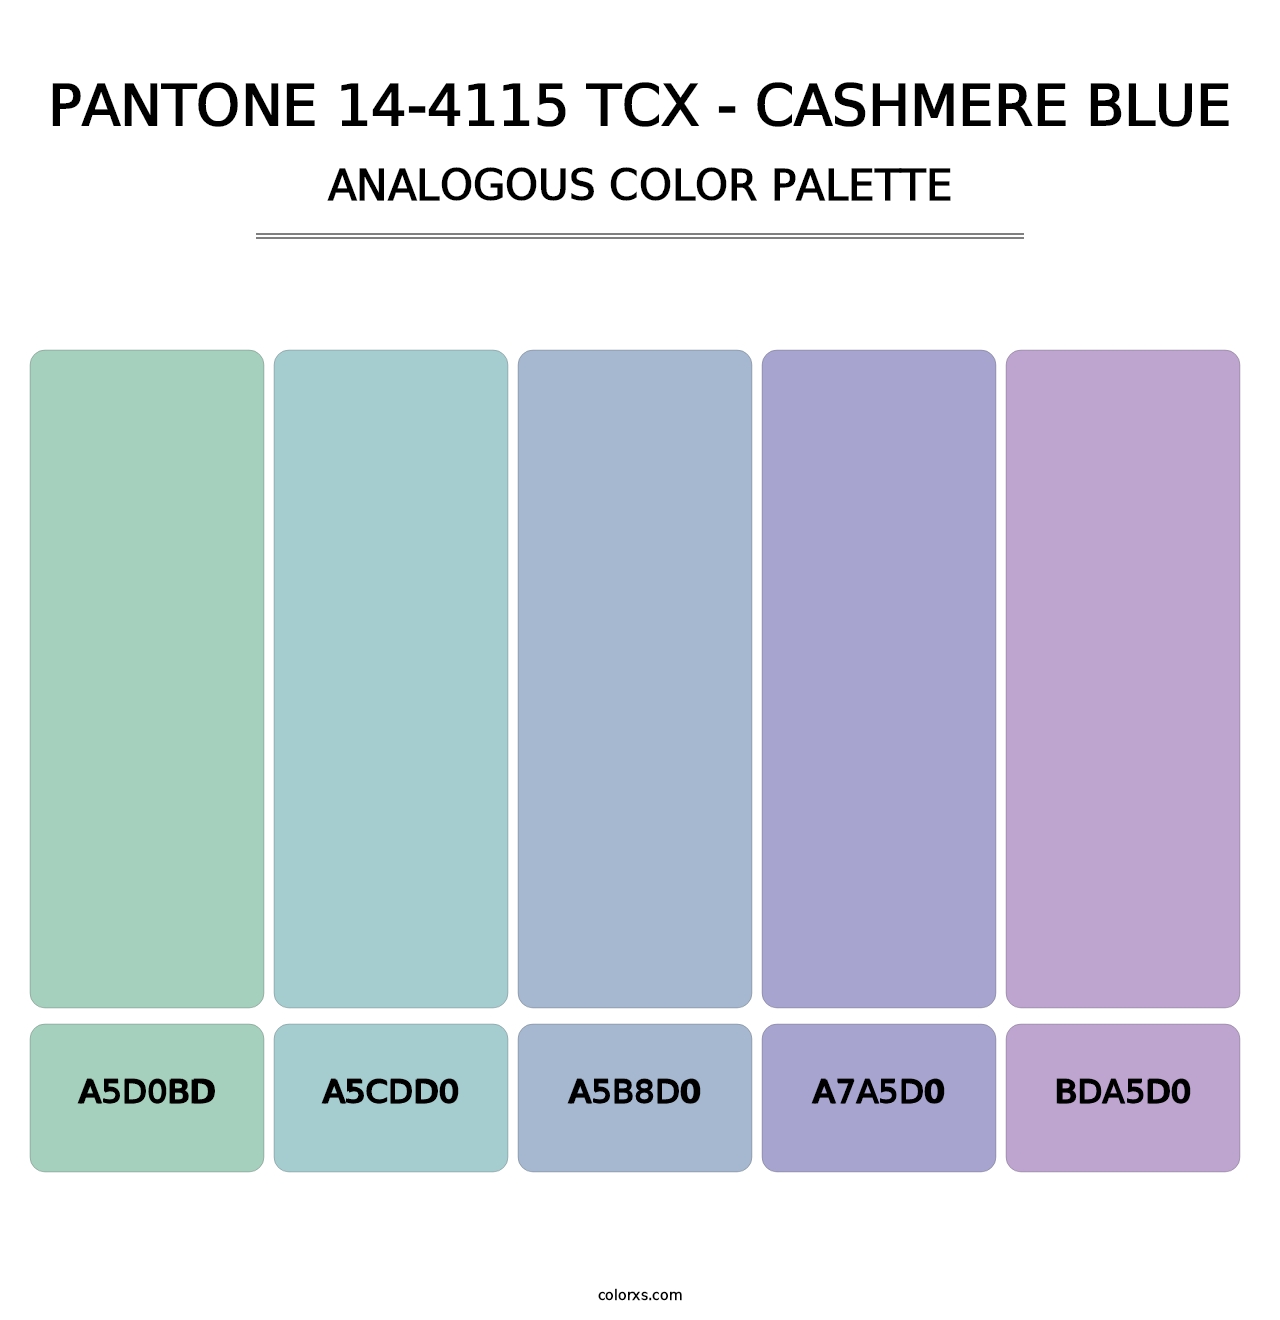 PANTONE 14-4115 TCX - Cashmere Blue - Analogous Color Palette